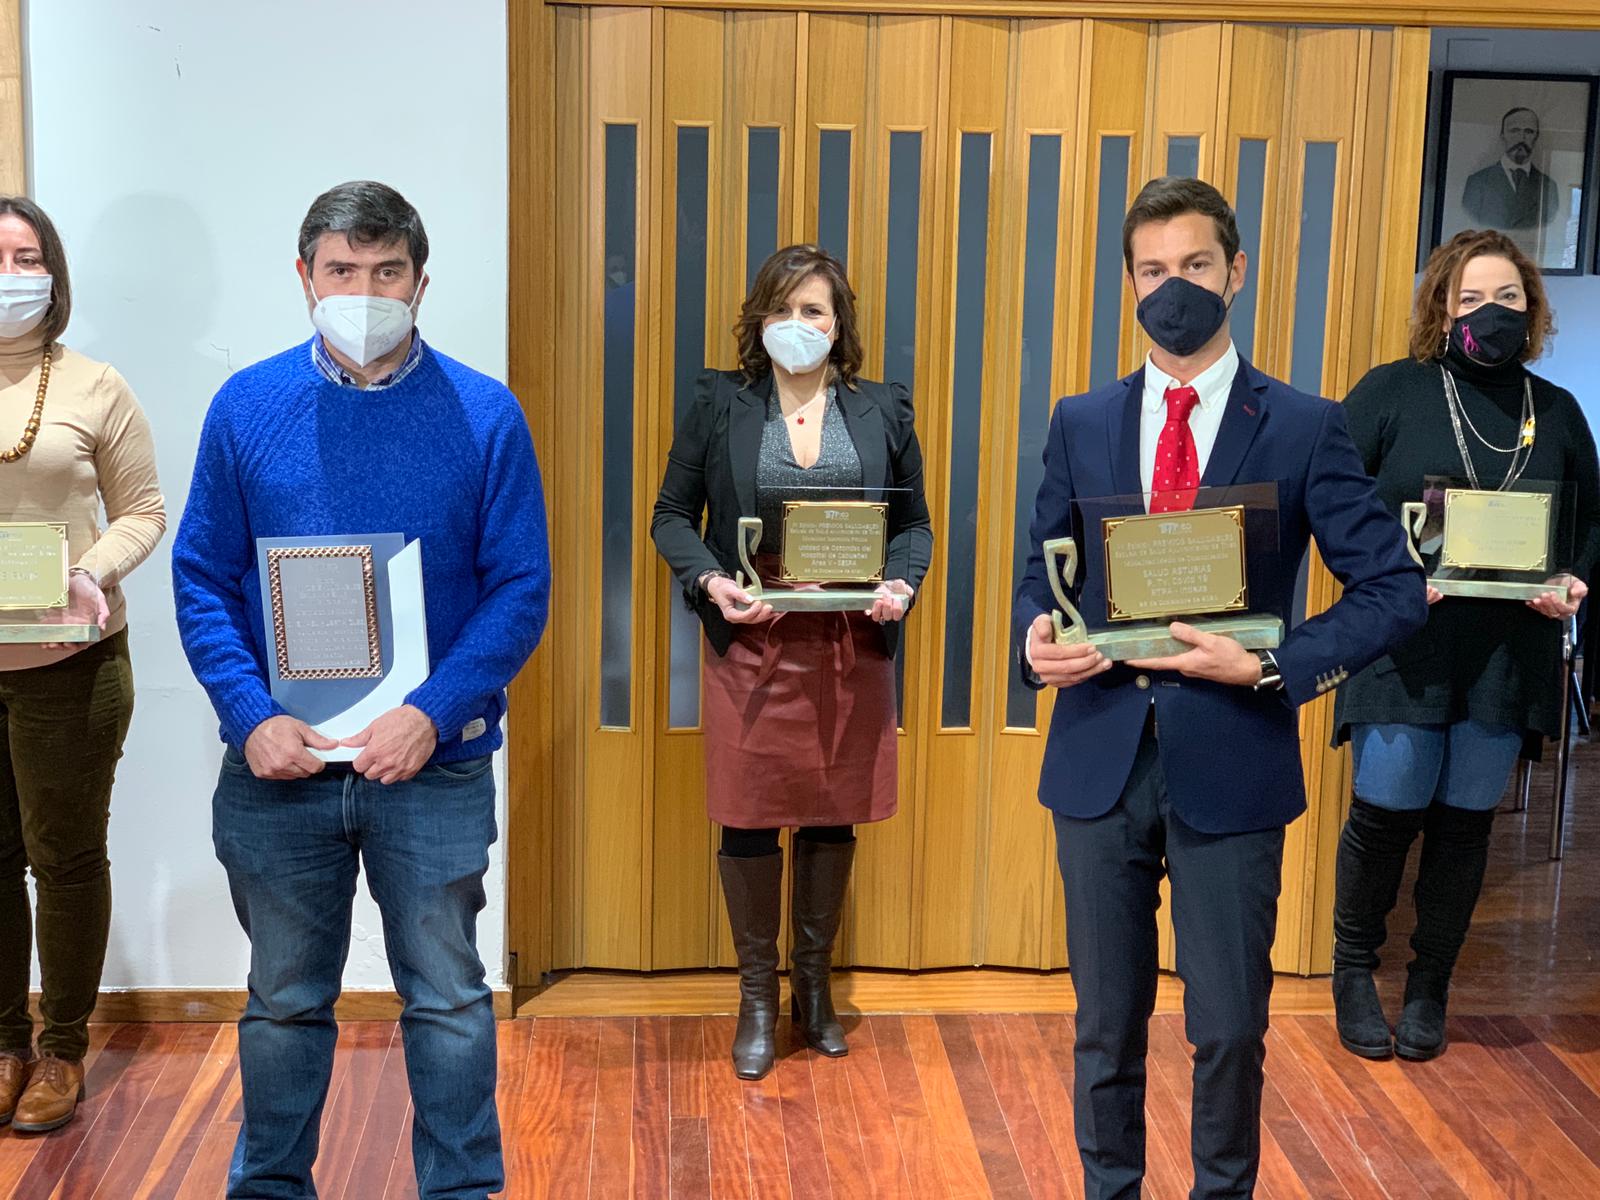 ‘Salud Asturias’, de Indexa Salud, recibe el Premio a Mejor Programa durante la Pandemia de la COVID-19